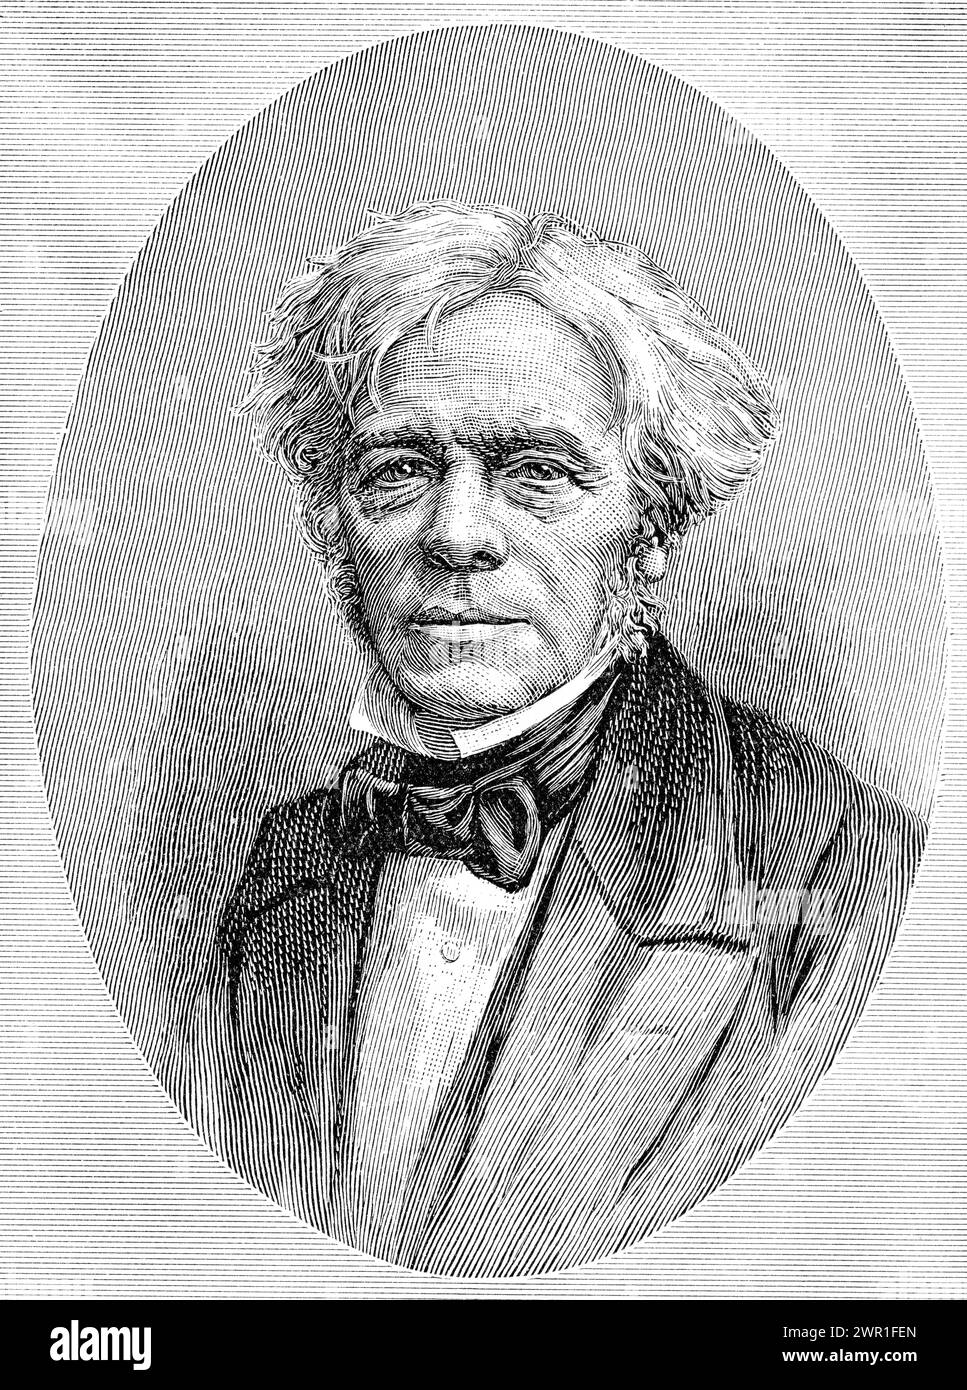 Michael Faraday (1791-1867). Nach John Watkins (1823-1874). Faraday war ein englischer Wissenschaftler, der an der Erforschung des Elektromagnetismus und der Elektrochemie mitwirkte. Zu seinen wichtigsten Entdeckungen zählen die Prinzipien der elektromagnetischen Induktion, Diamagnetismus und Elektrolyse. Stockfoto